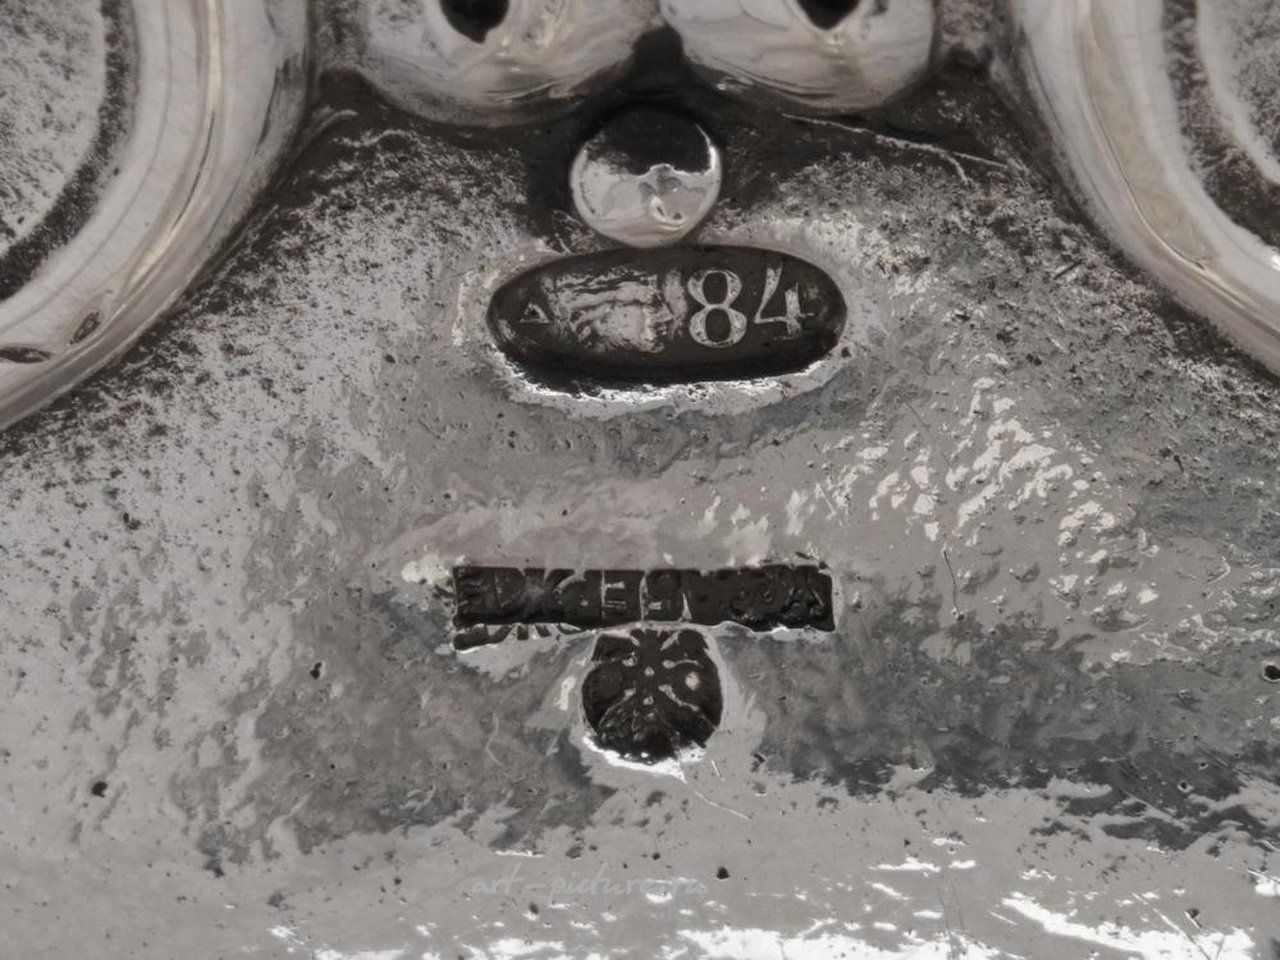 俄罗斯银 , 俄罗斯银质管状花瓶，带有浮雕图案